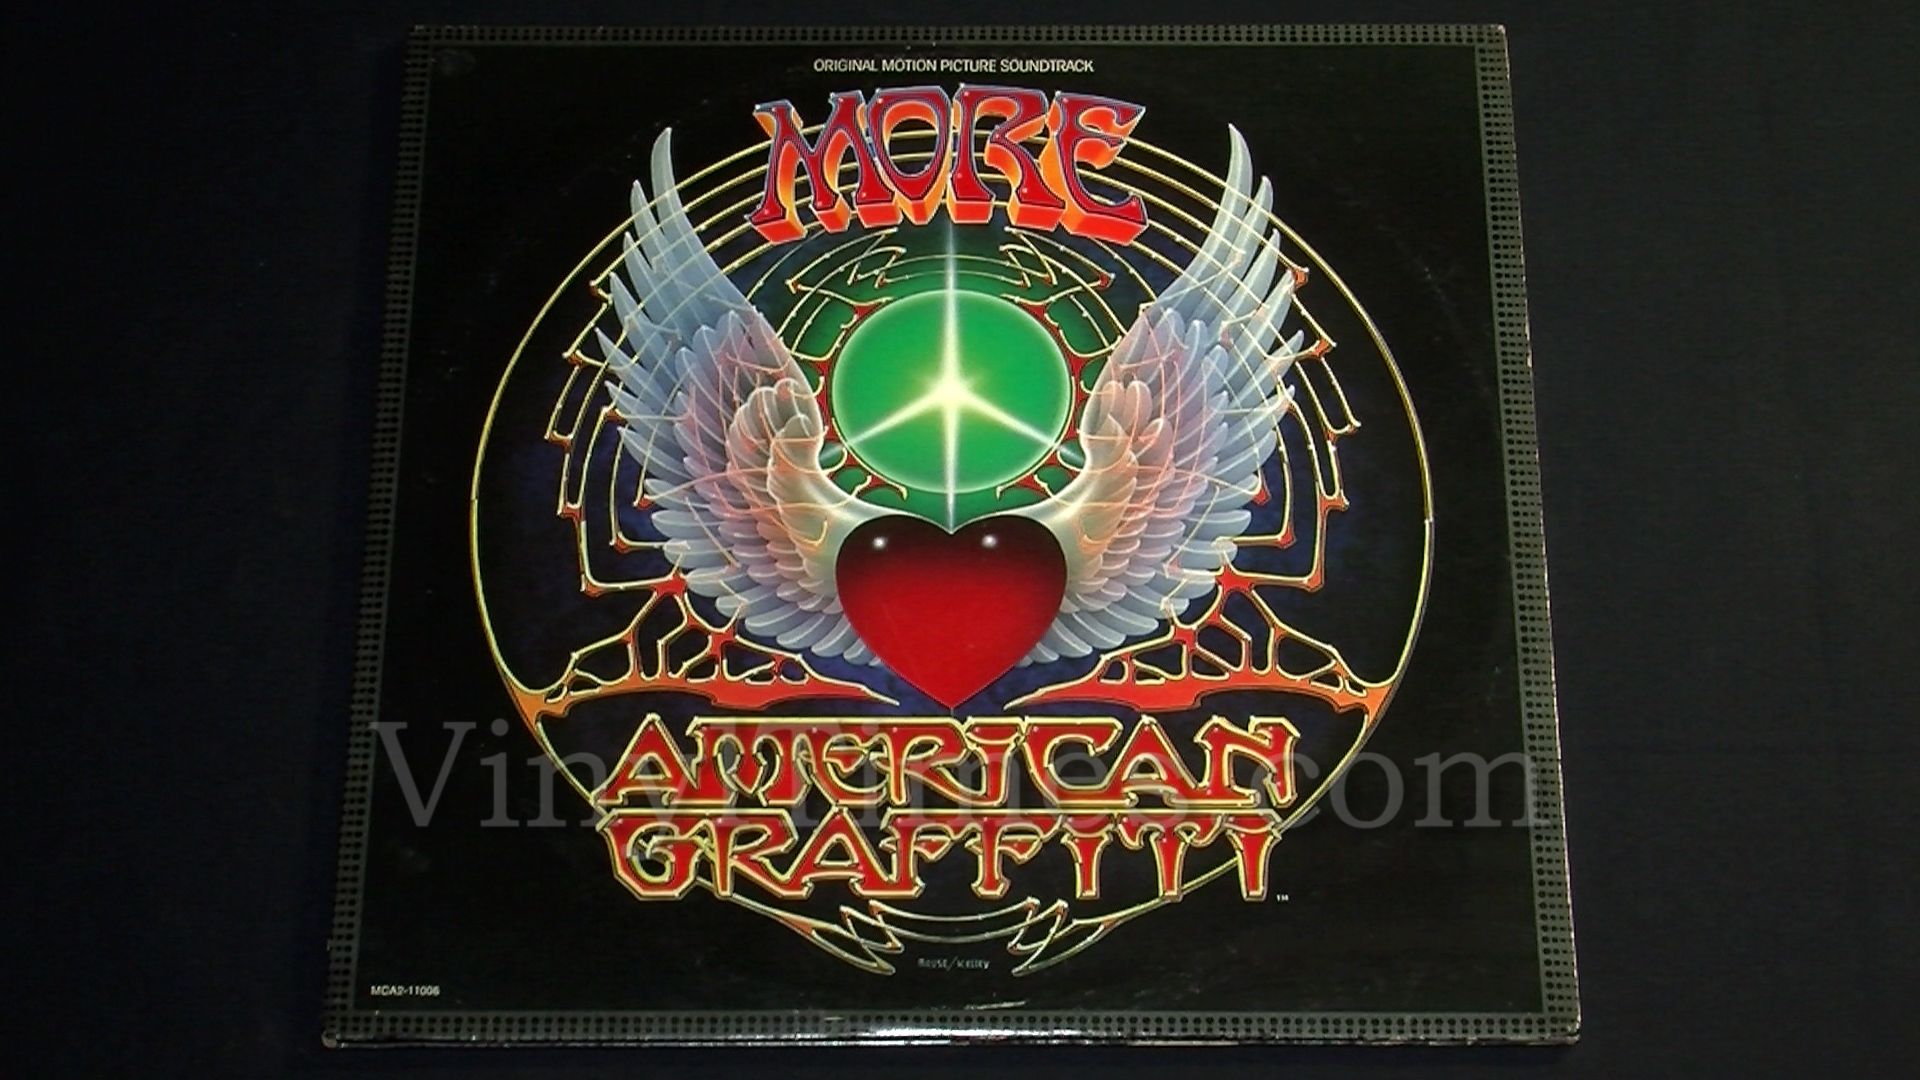 Soundtrack - "More American Graffiti" Vinyl LP Record Album gatefold cover